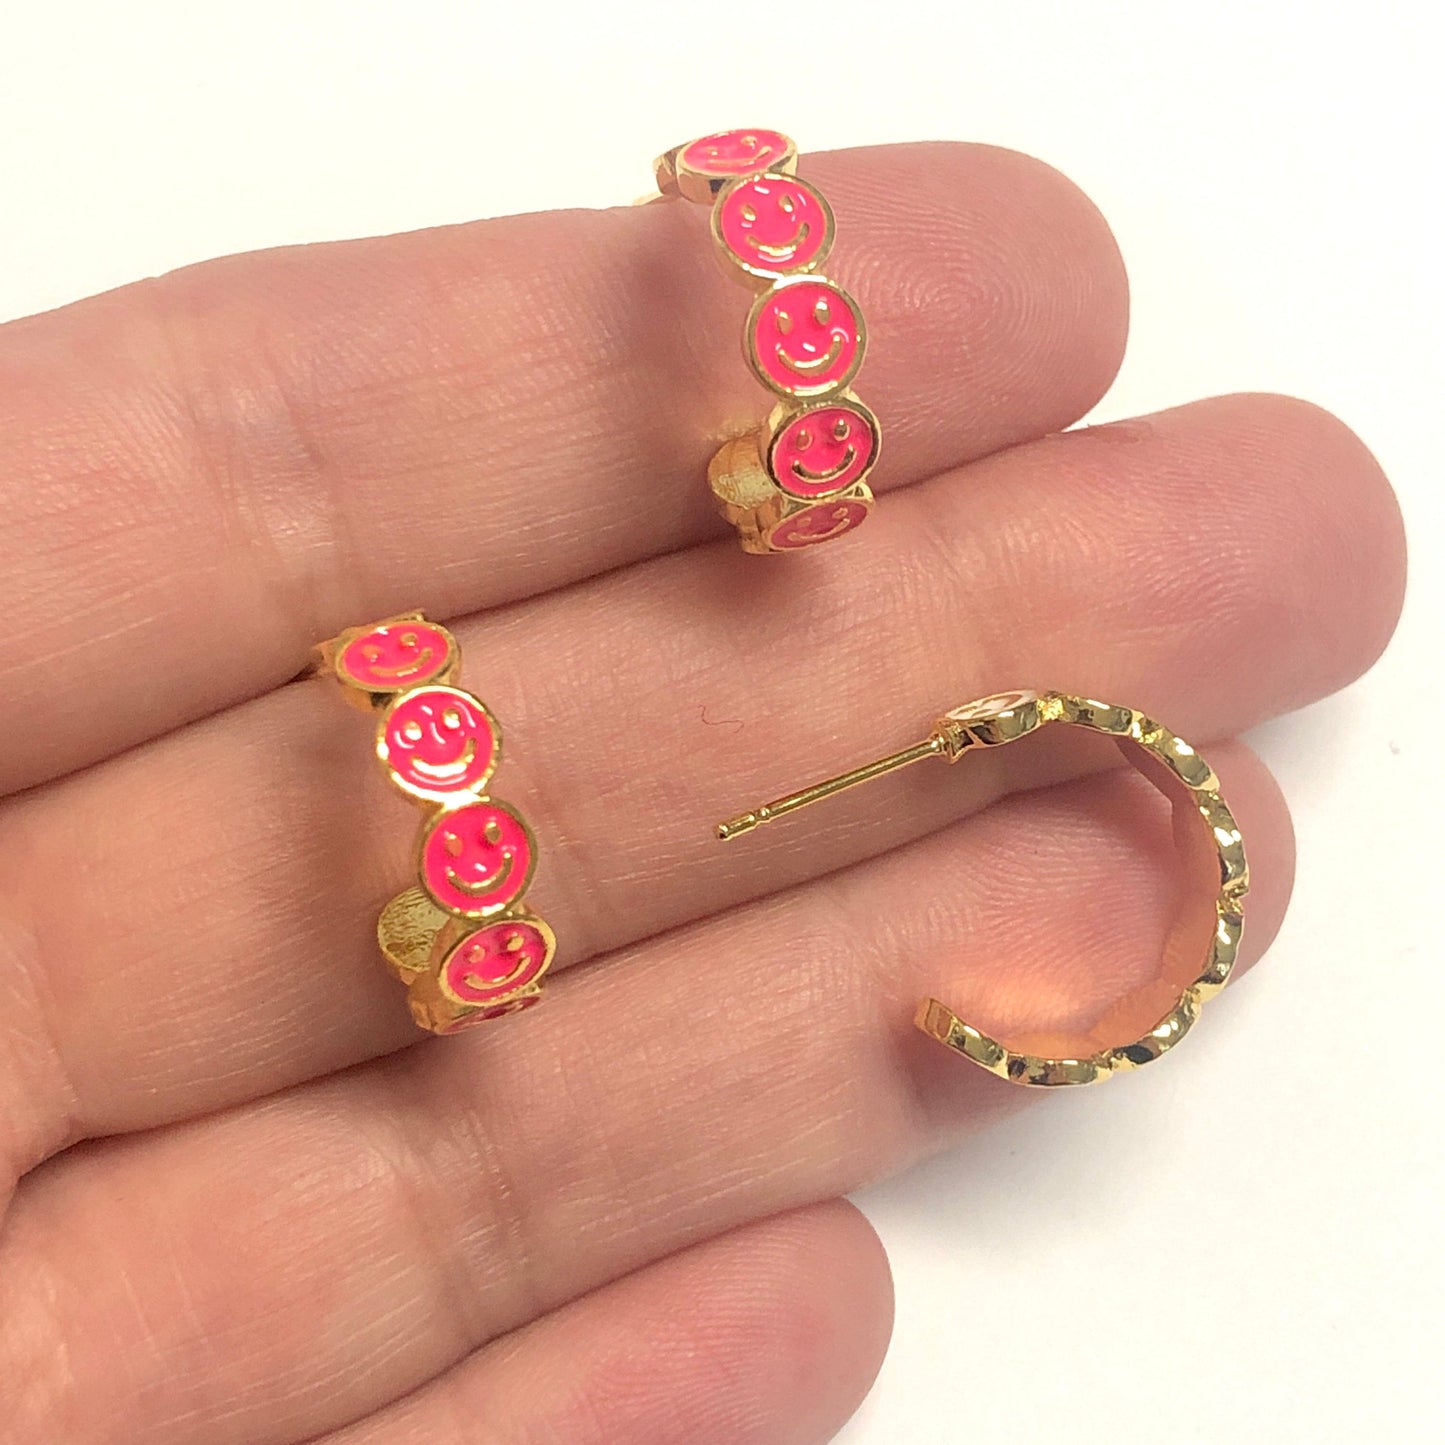 Vergoldete Emaille-Ohrringe mit lächelndem Gesicht - Neonpink